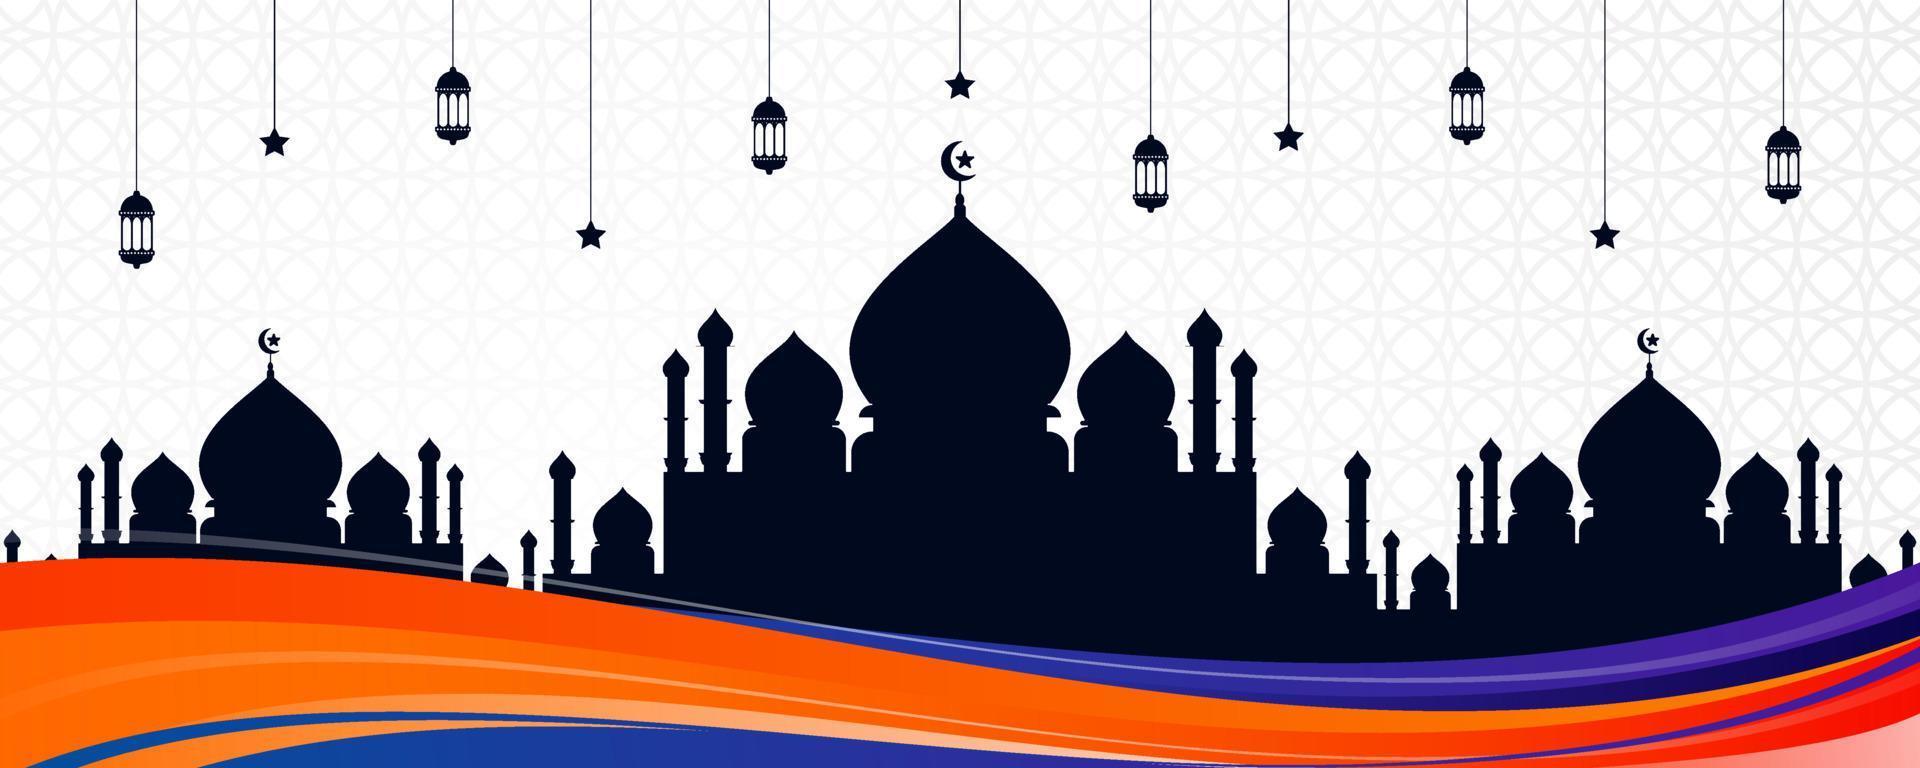 islamitische wenskaartbanner met kleurrijk golfontwerp, moskeesilhouet en arabische ornamenten. mooie eid al fitr-achtergrond met hangende lantaarns, sterren en kleurrijke abstracte golf vector